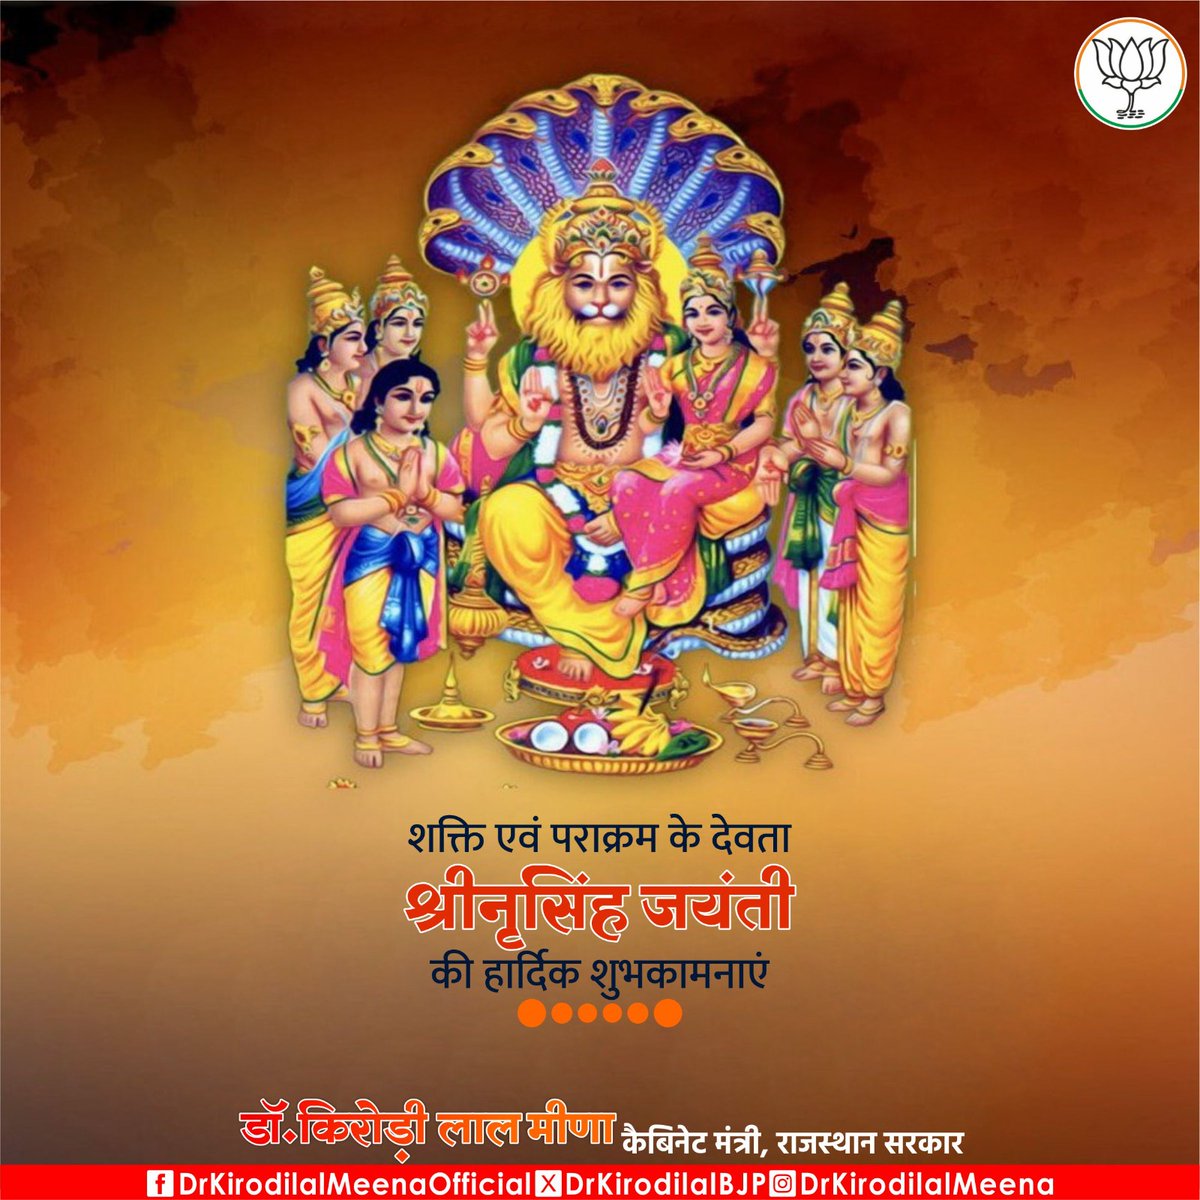 भगवान विष्णु के चौथे अवतार श्रीनृसिंह जयंती की आप सभी को हार्दिक शुभकामनाएं।